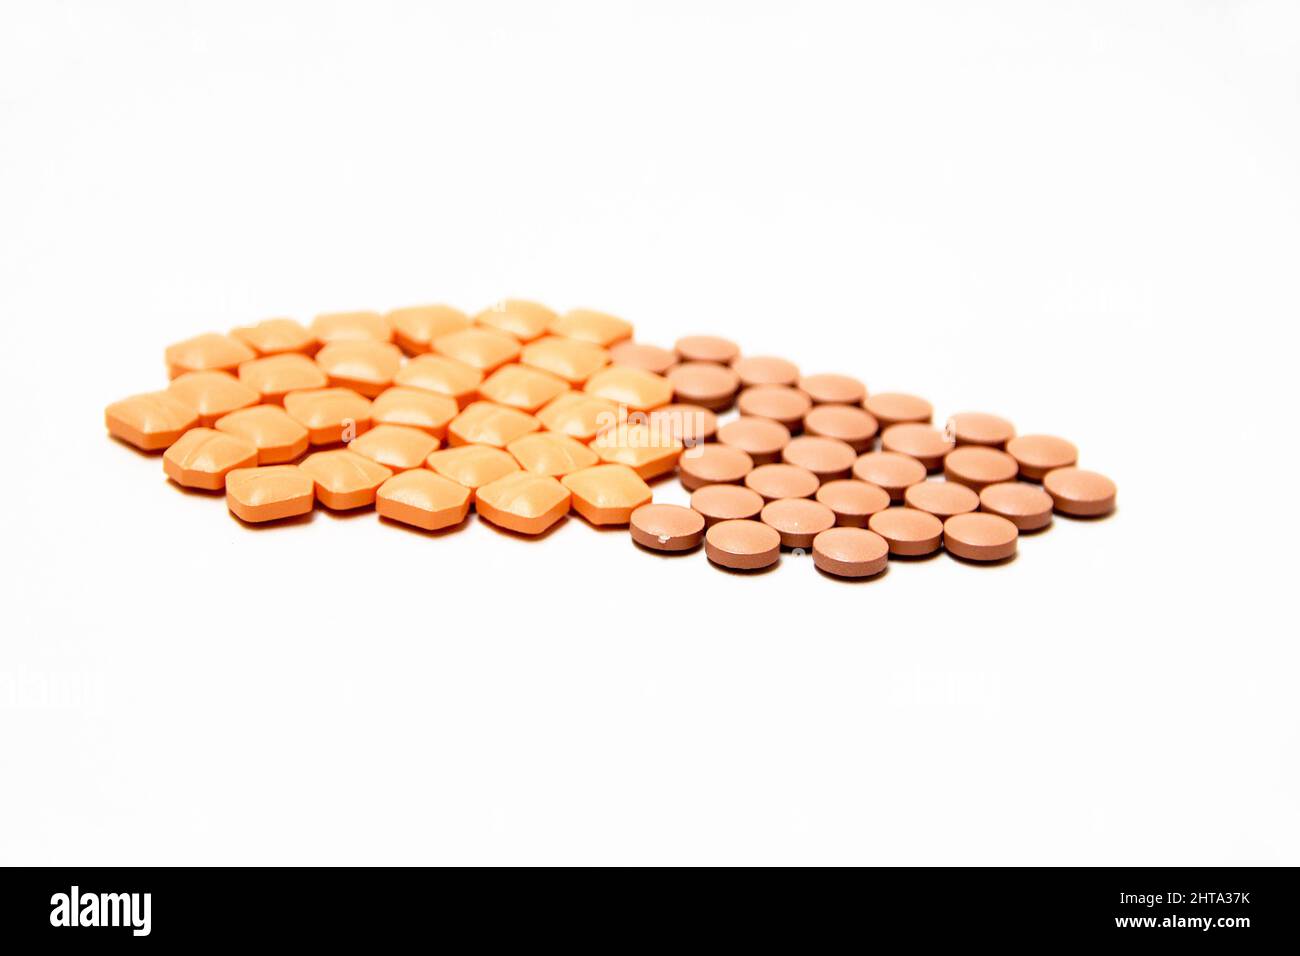 Mucchio di pillole medicinali rosa e marrone isolato su sfondo bianco Foto Stock